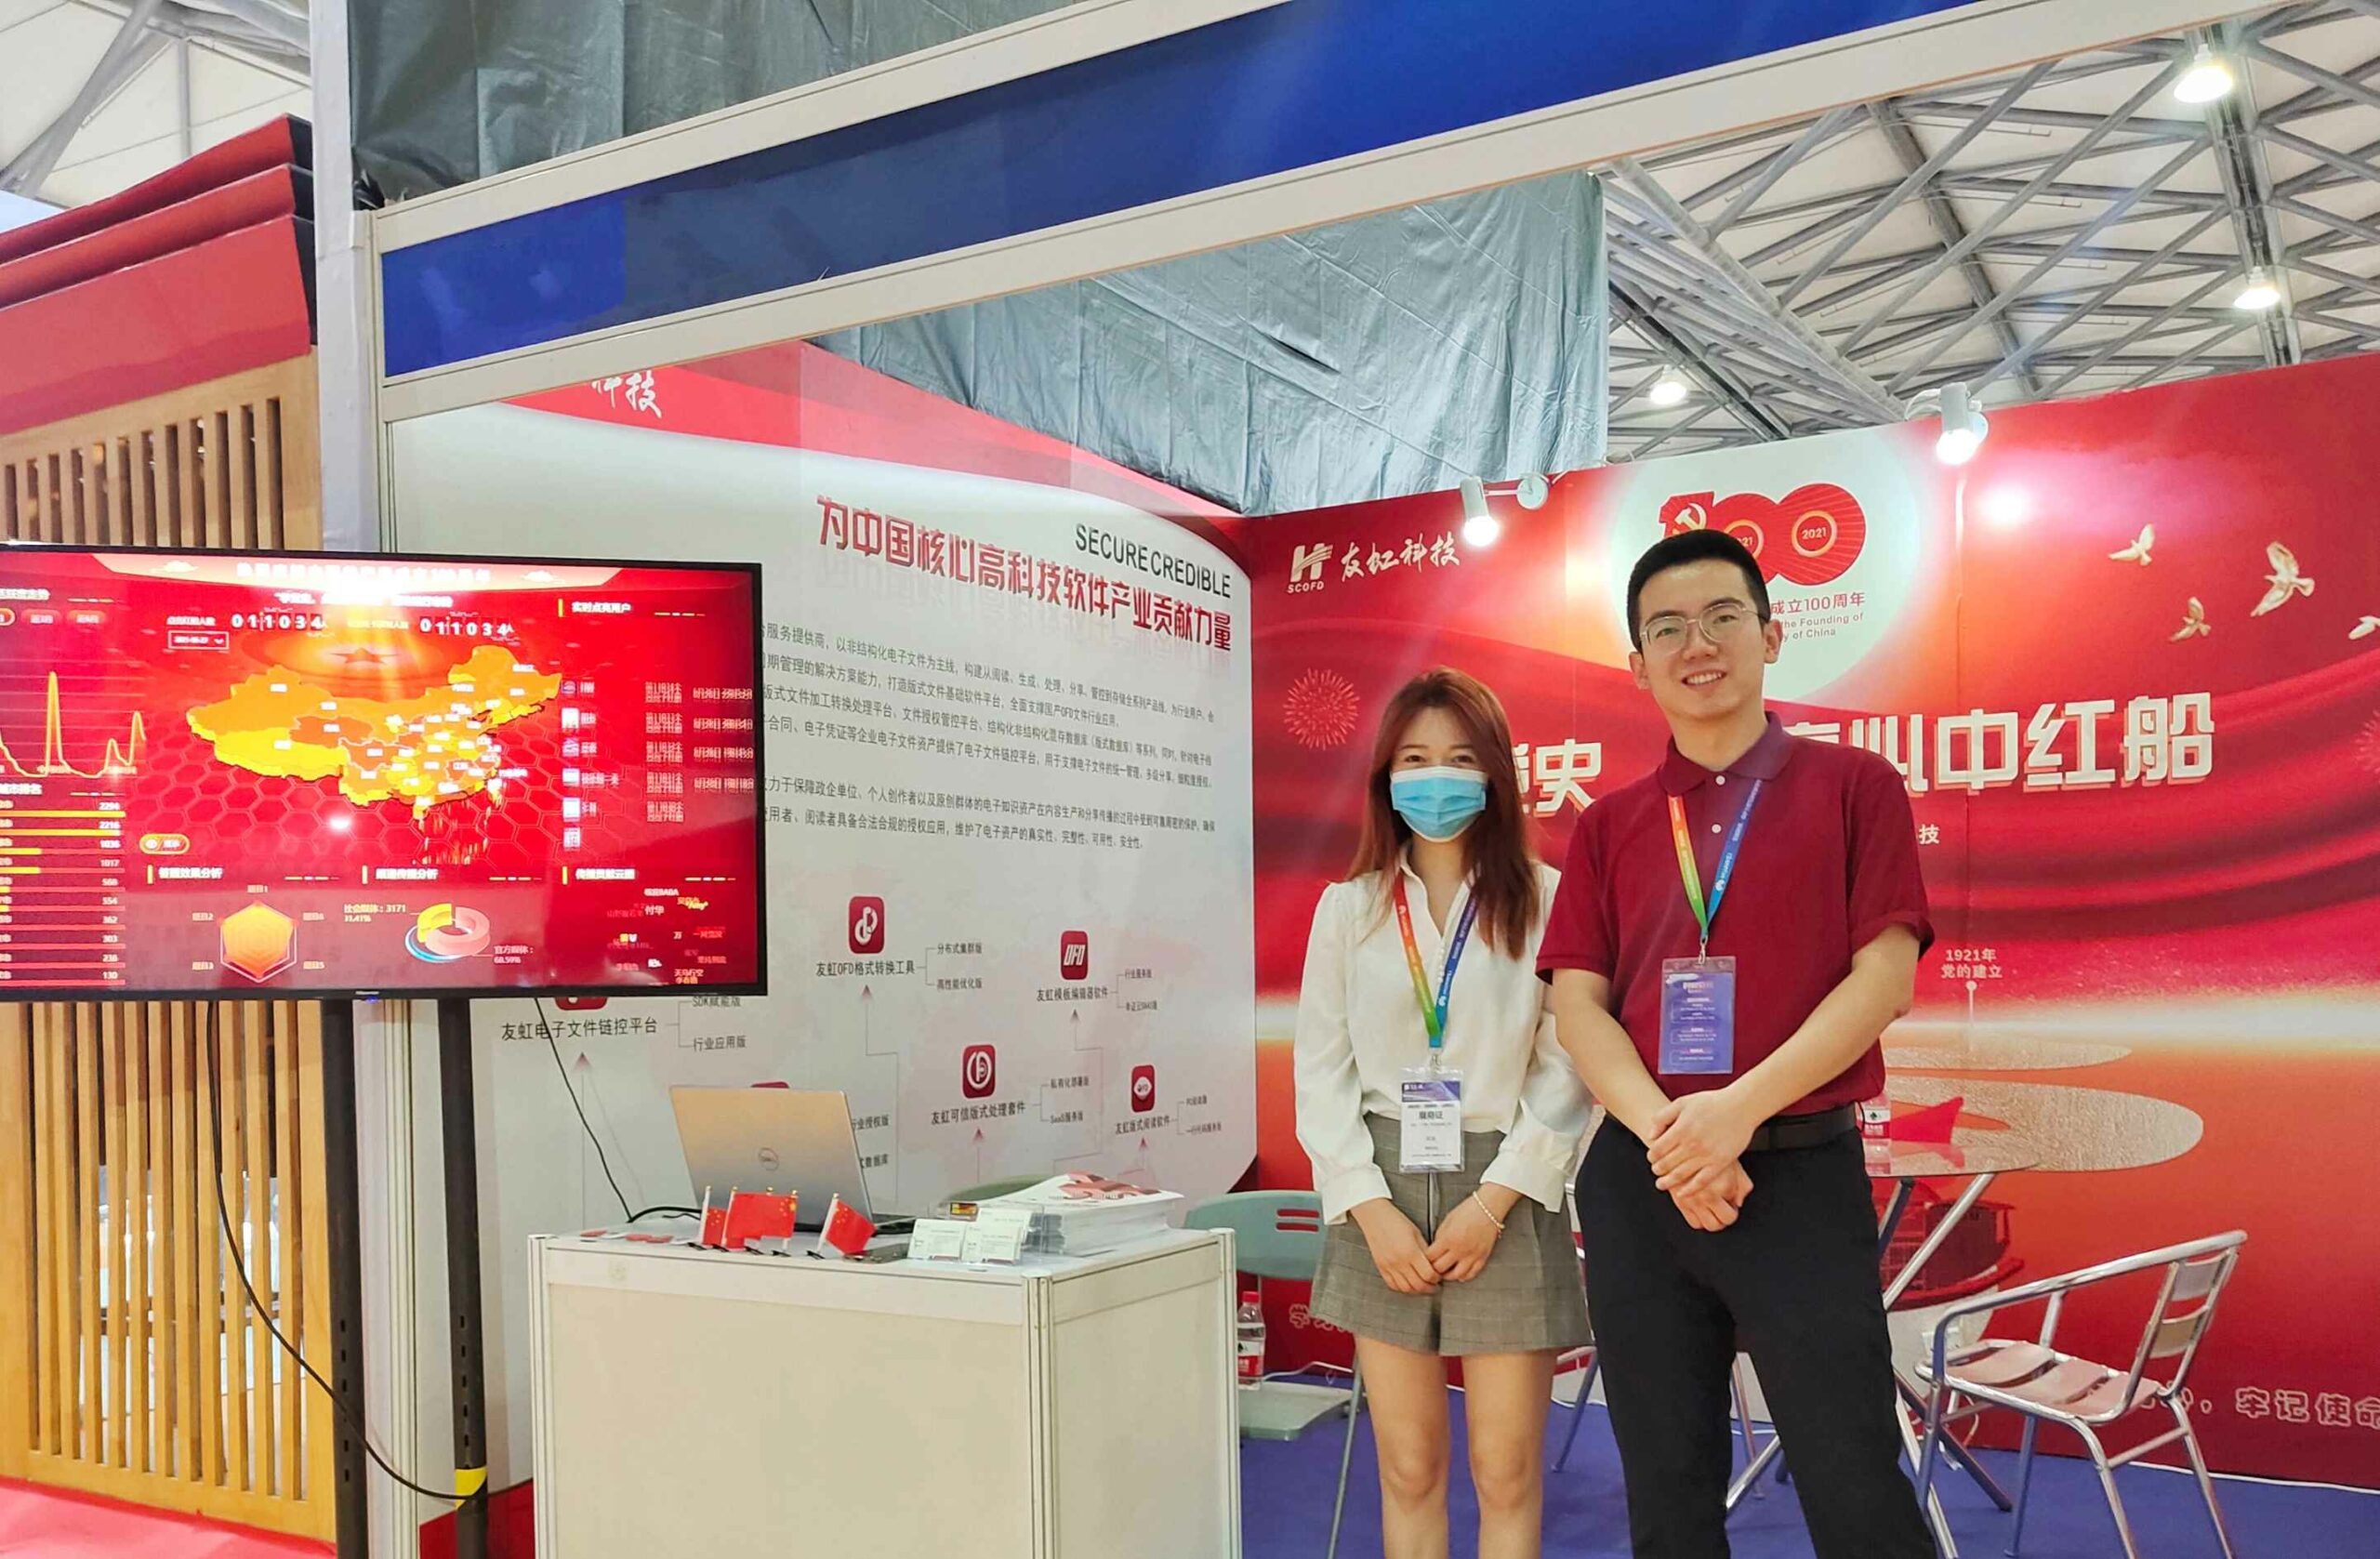 档案盛会，以档会友！友虹科技与您相约上海国际智慧档案展览会！